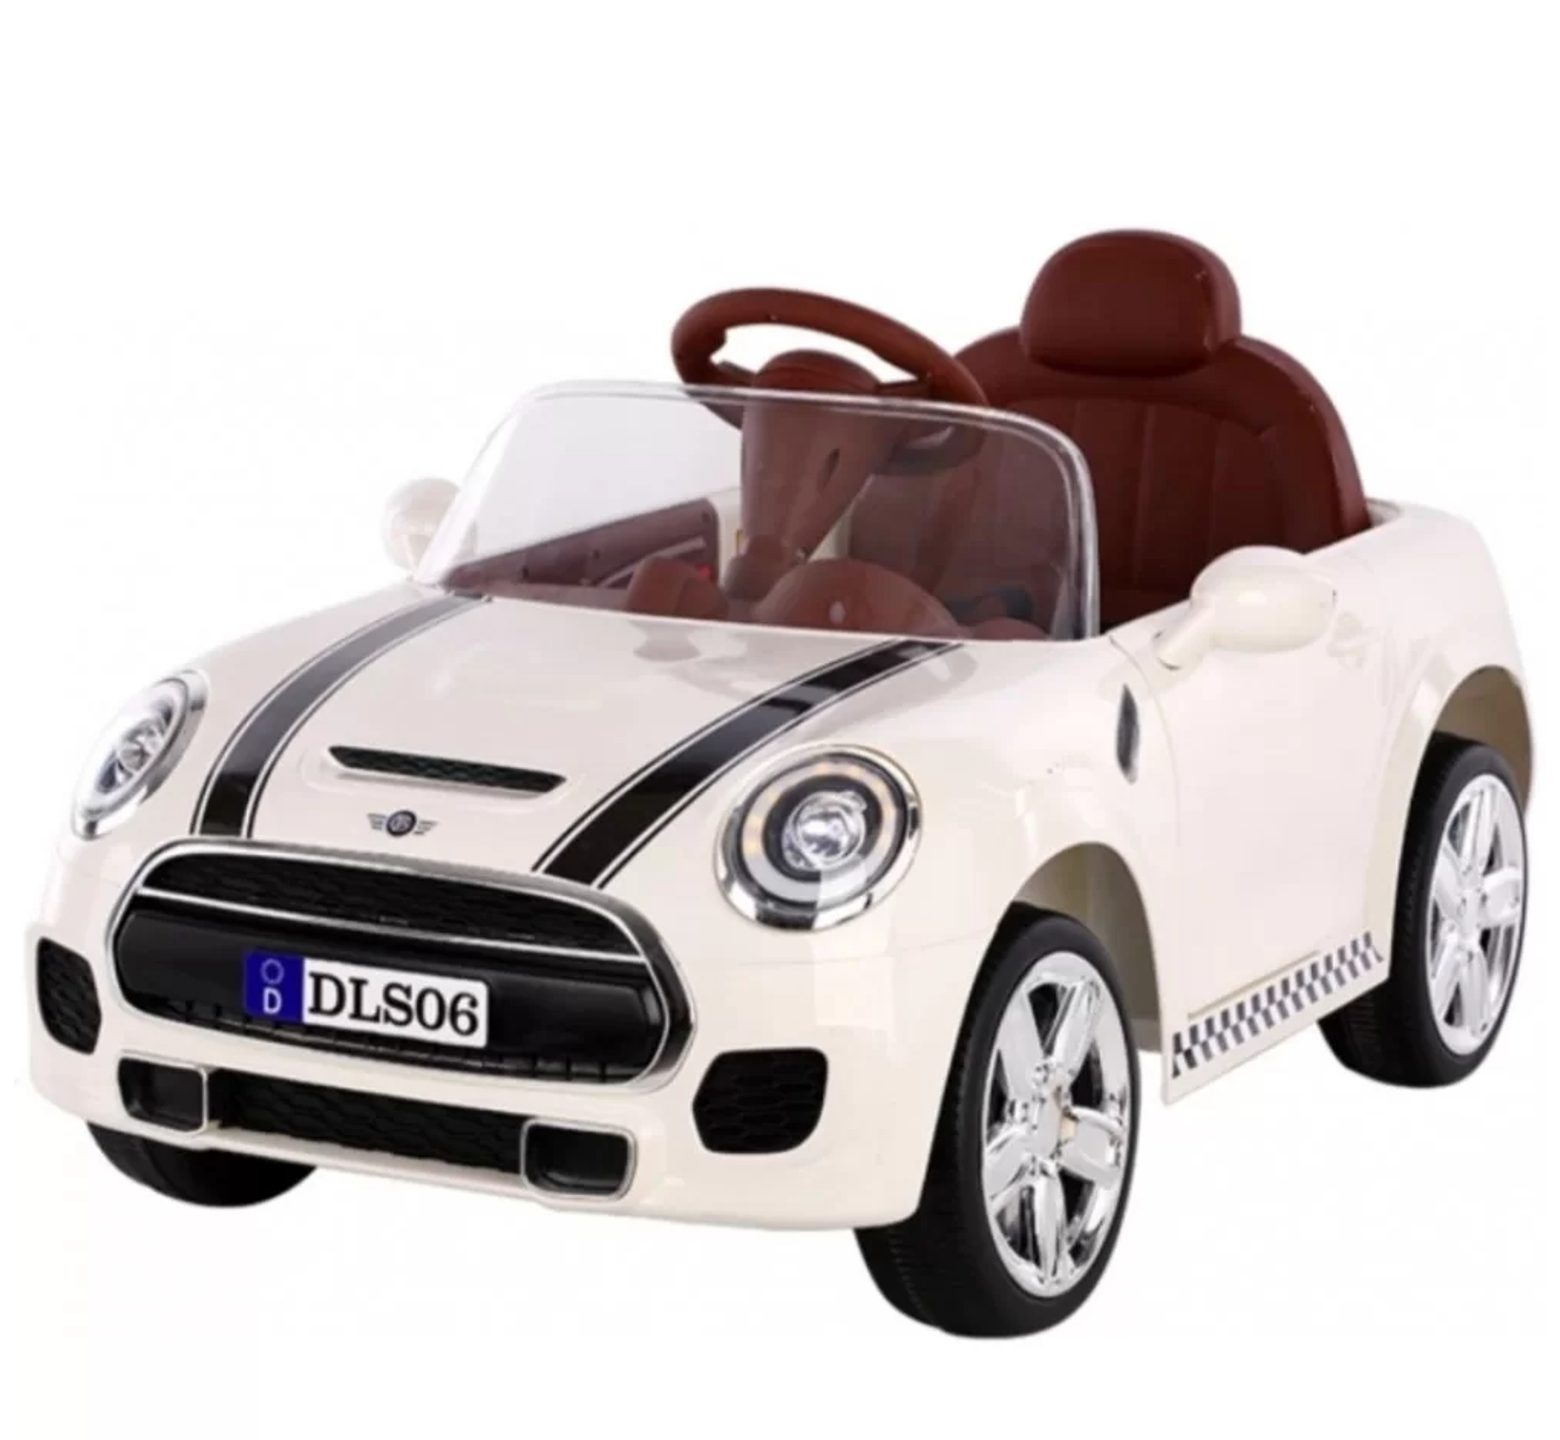 Ηλεκτροκίνητο αυτοκίνητο τύπου Mini Cooper 12V με δερμάτινο κάθισμα και ελαστικά τύπου αυτοκινήτου σε άσπρο χρώμα